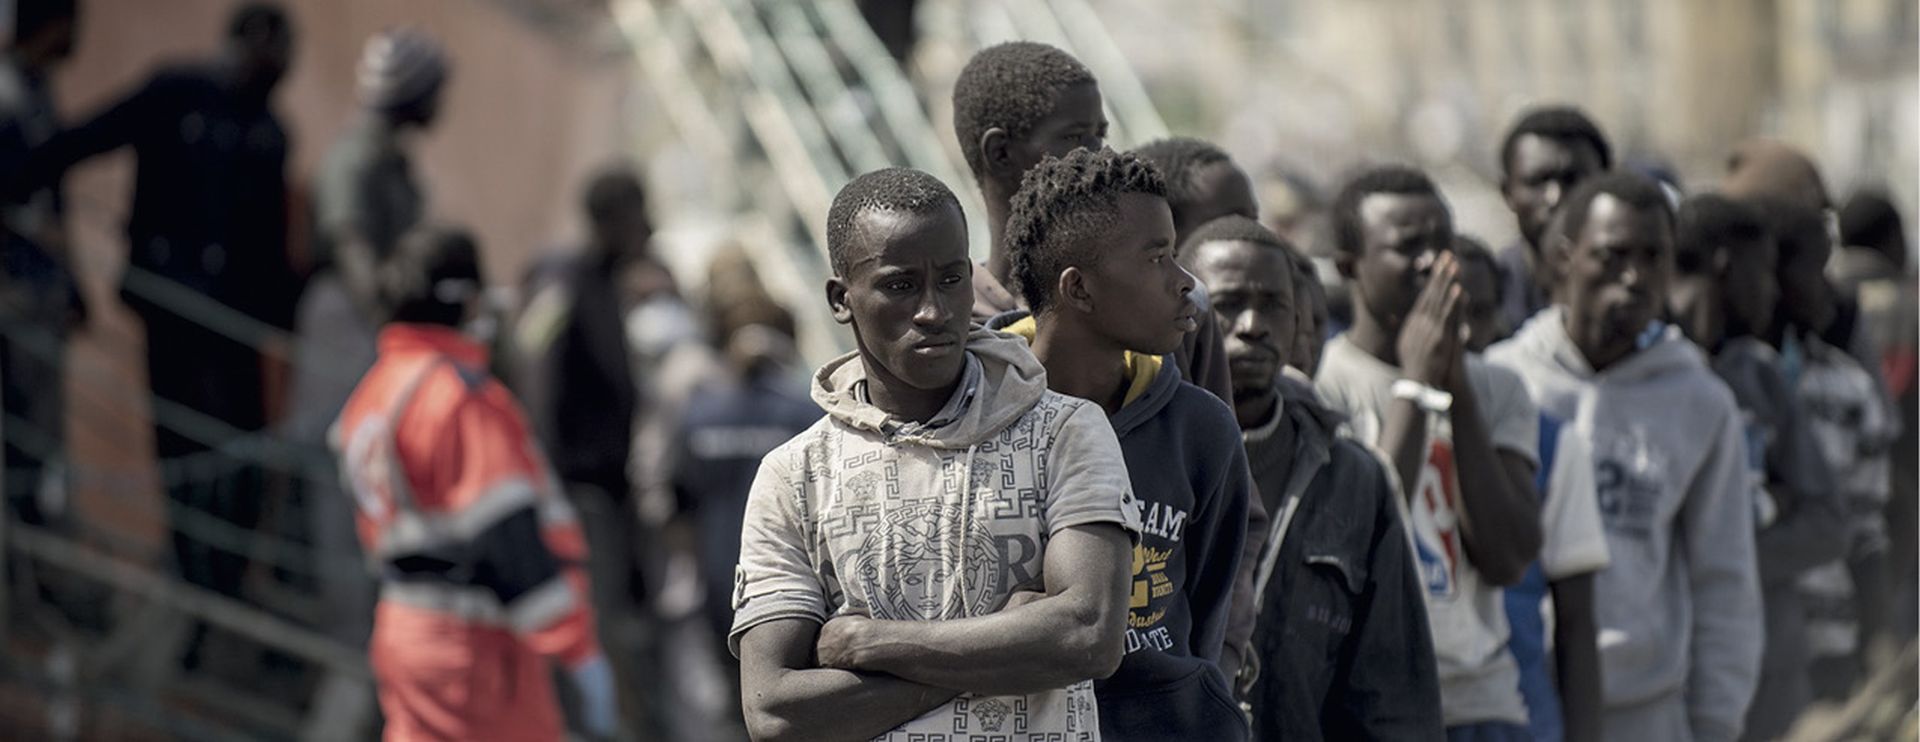 Iz Afrike kreće novi migrantski val od šest milijuna izbjeglica